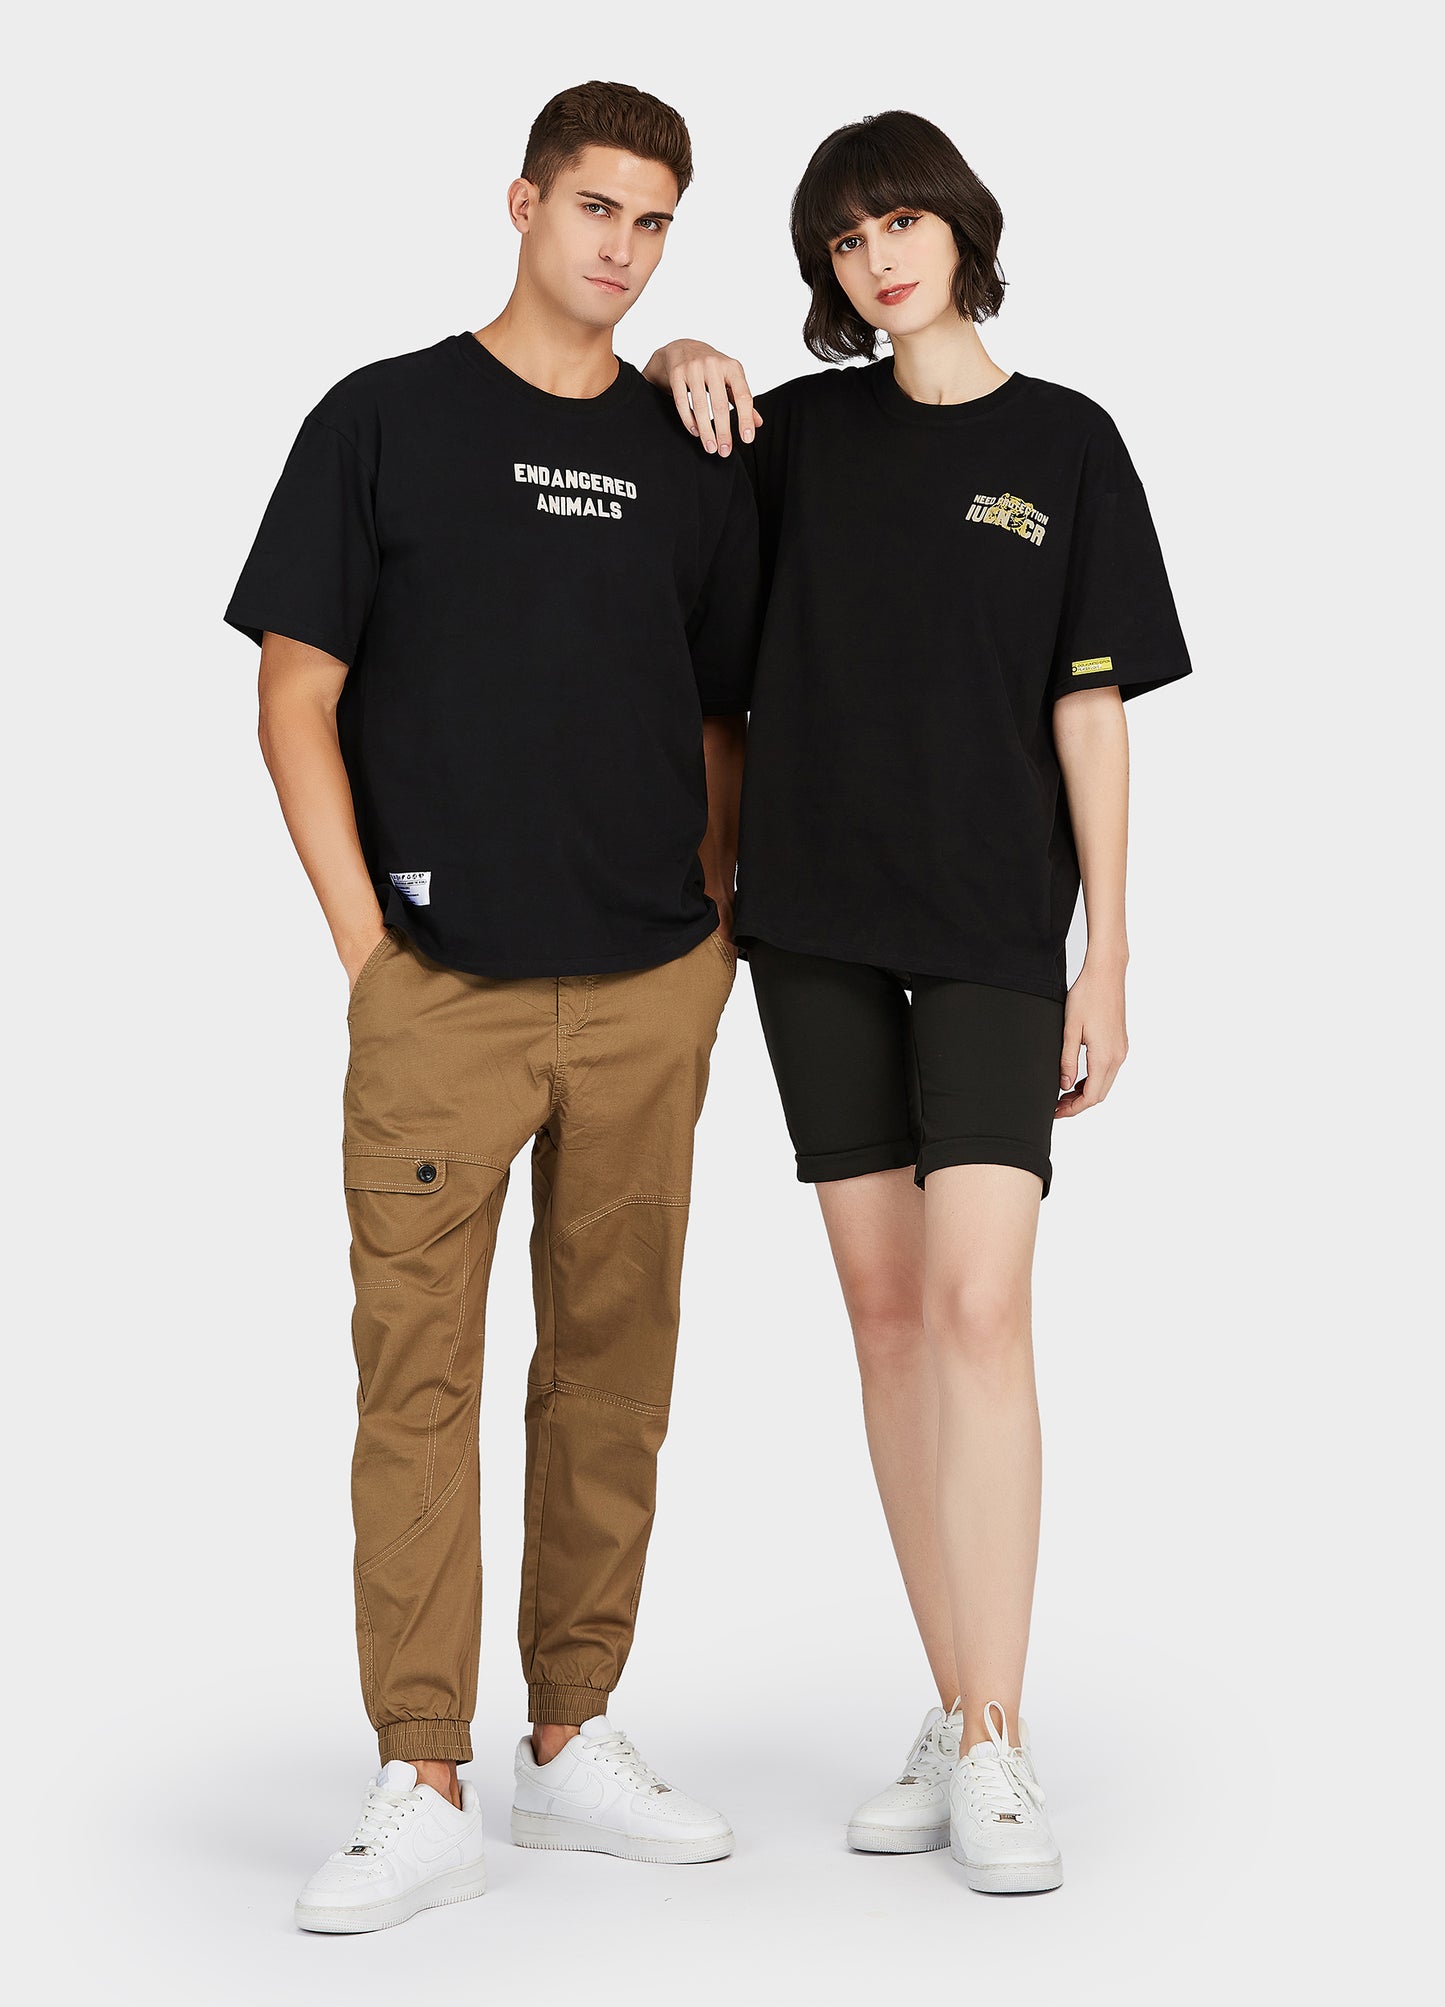 OOLA Unisex 100% Cotton T-Shirt Short Sleeve Couple T Shirts